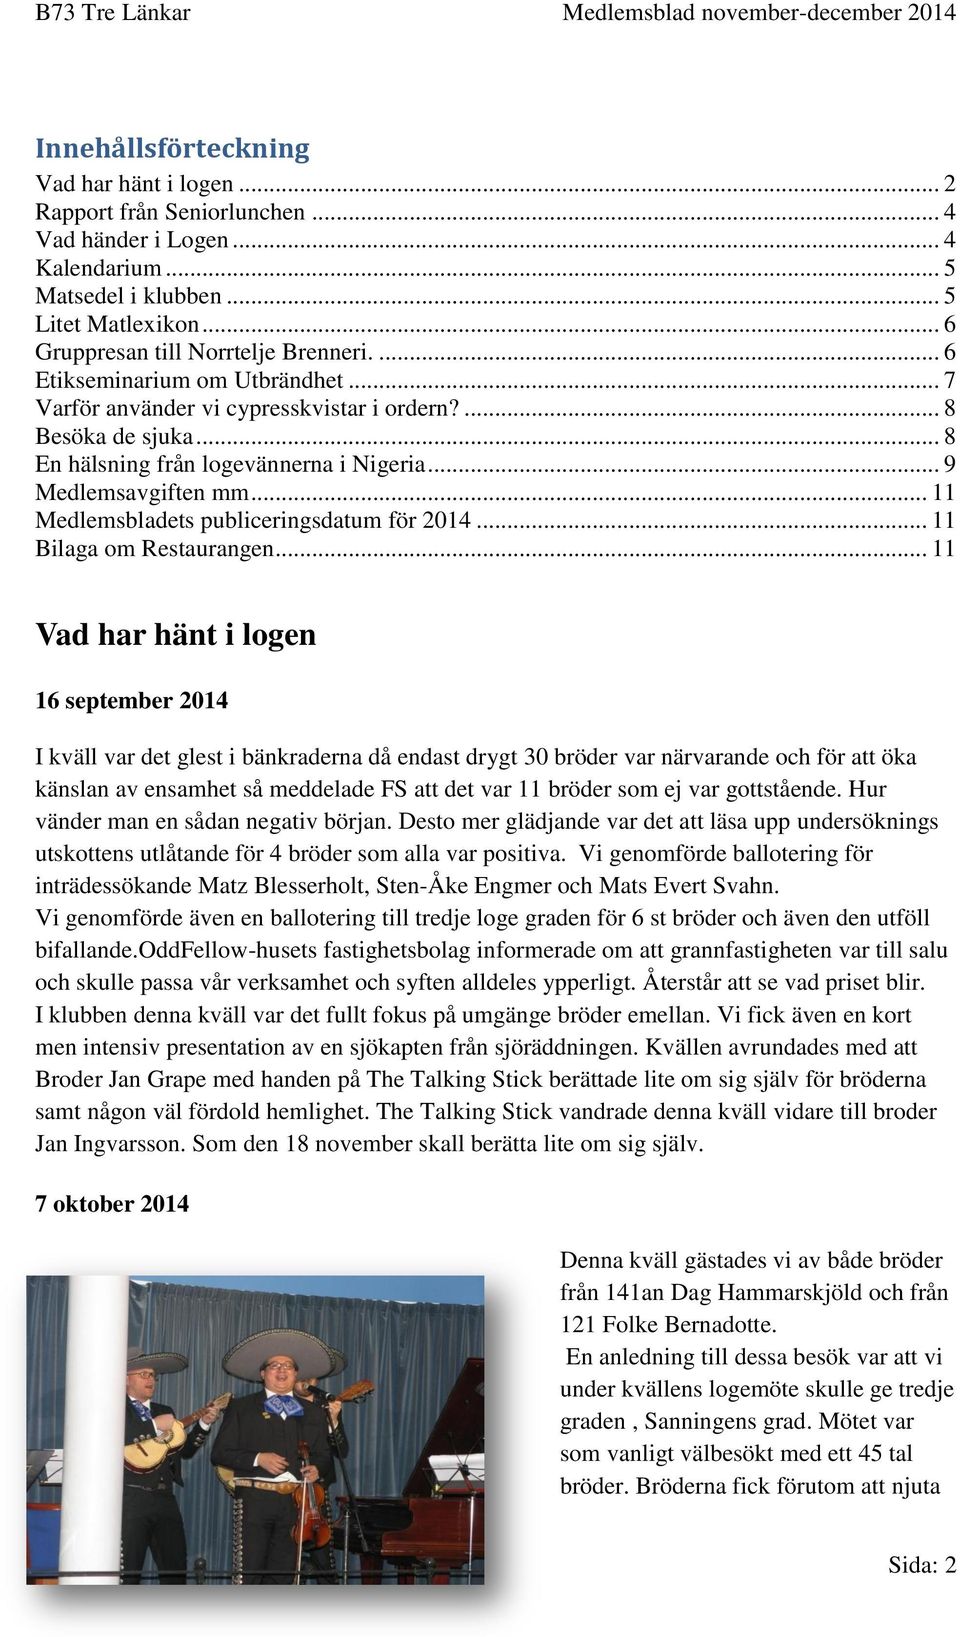 .. 11 Medlemsbladets publiceringsdatum för 2014... 11 Bilaga om Restaurangen.